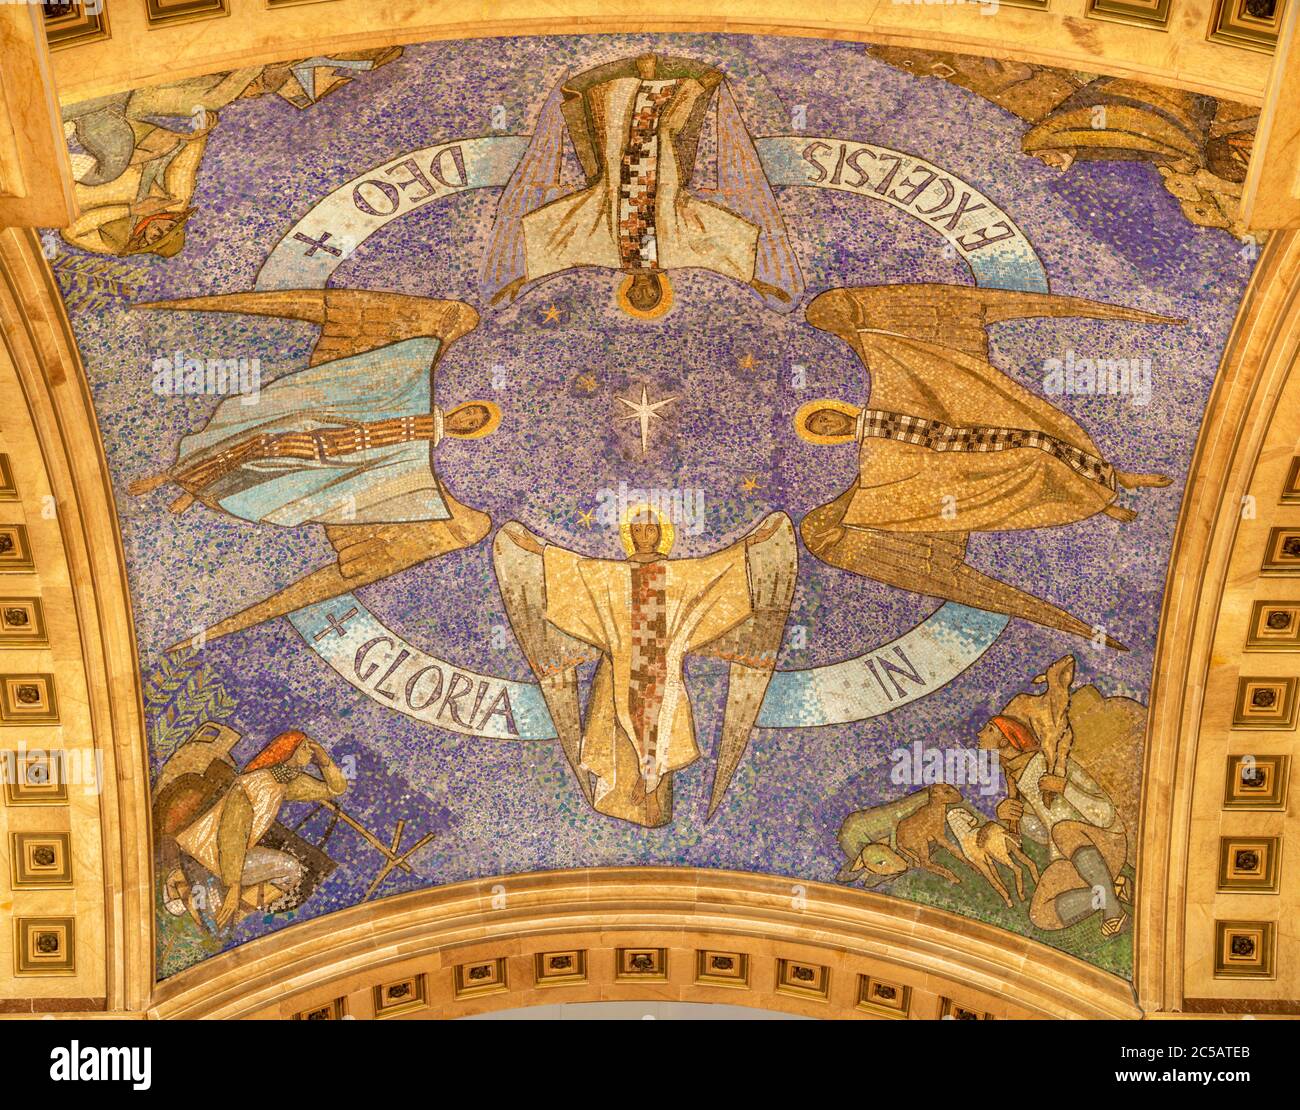 BARCELONA, SPANIEN - 3. MÄRZ 2020: Das Mosaik der Engel und der Hirten von Bethlehem auf dem Cieling des Presbyteriums in der Kirche Iglesia de Belen. Stockfoto